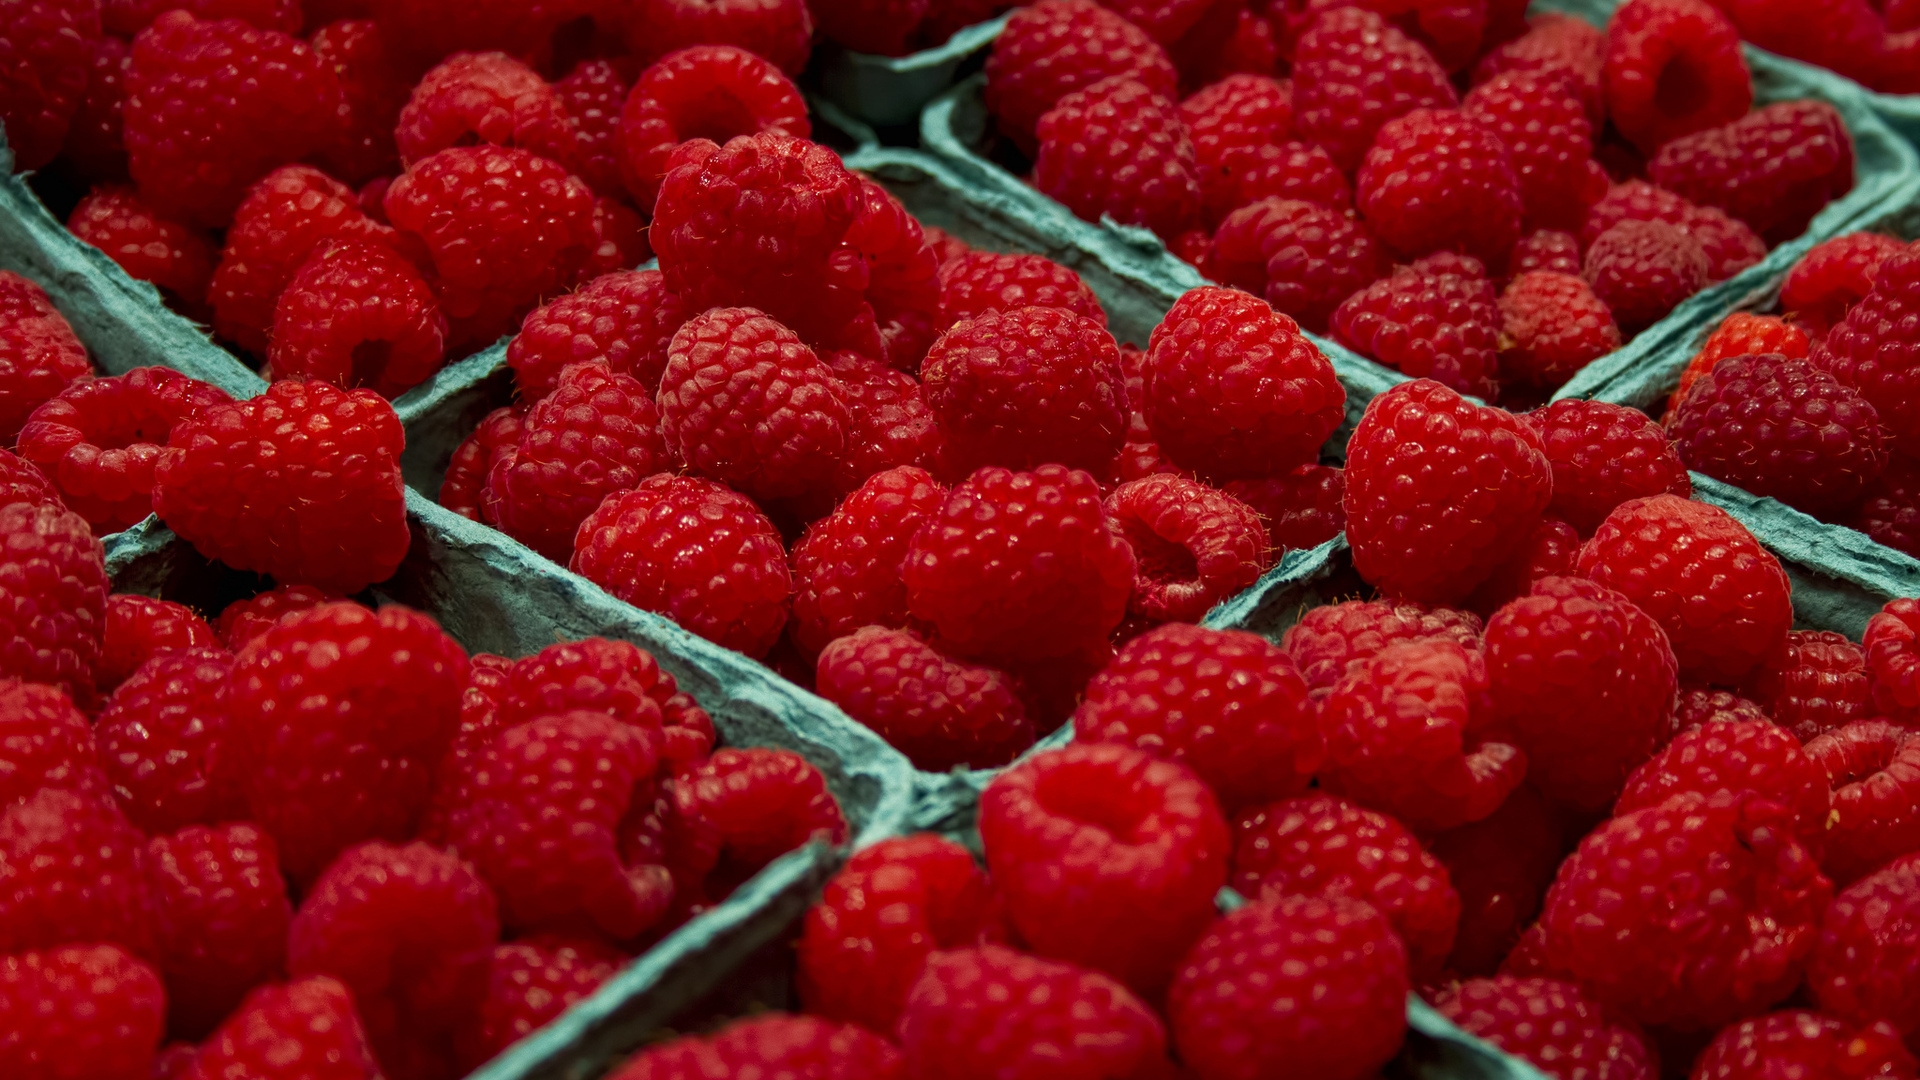 Raspberries  for 1920 x 1080 HDTV 1080p resolution